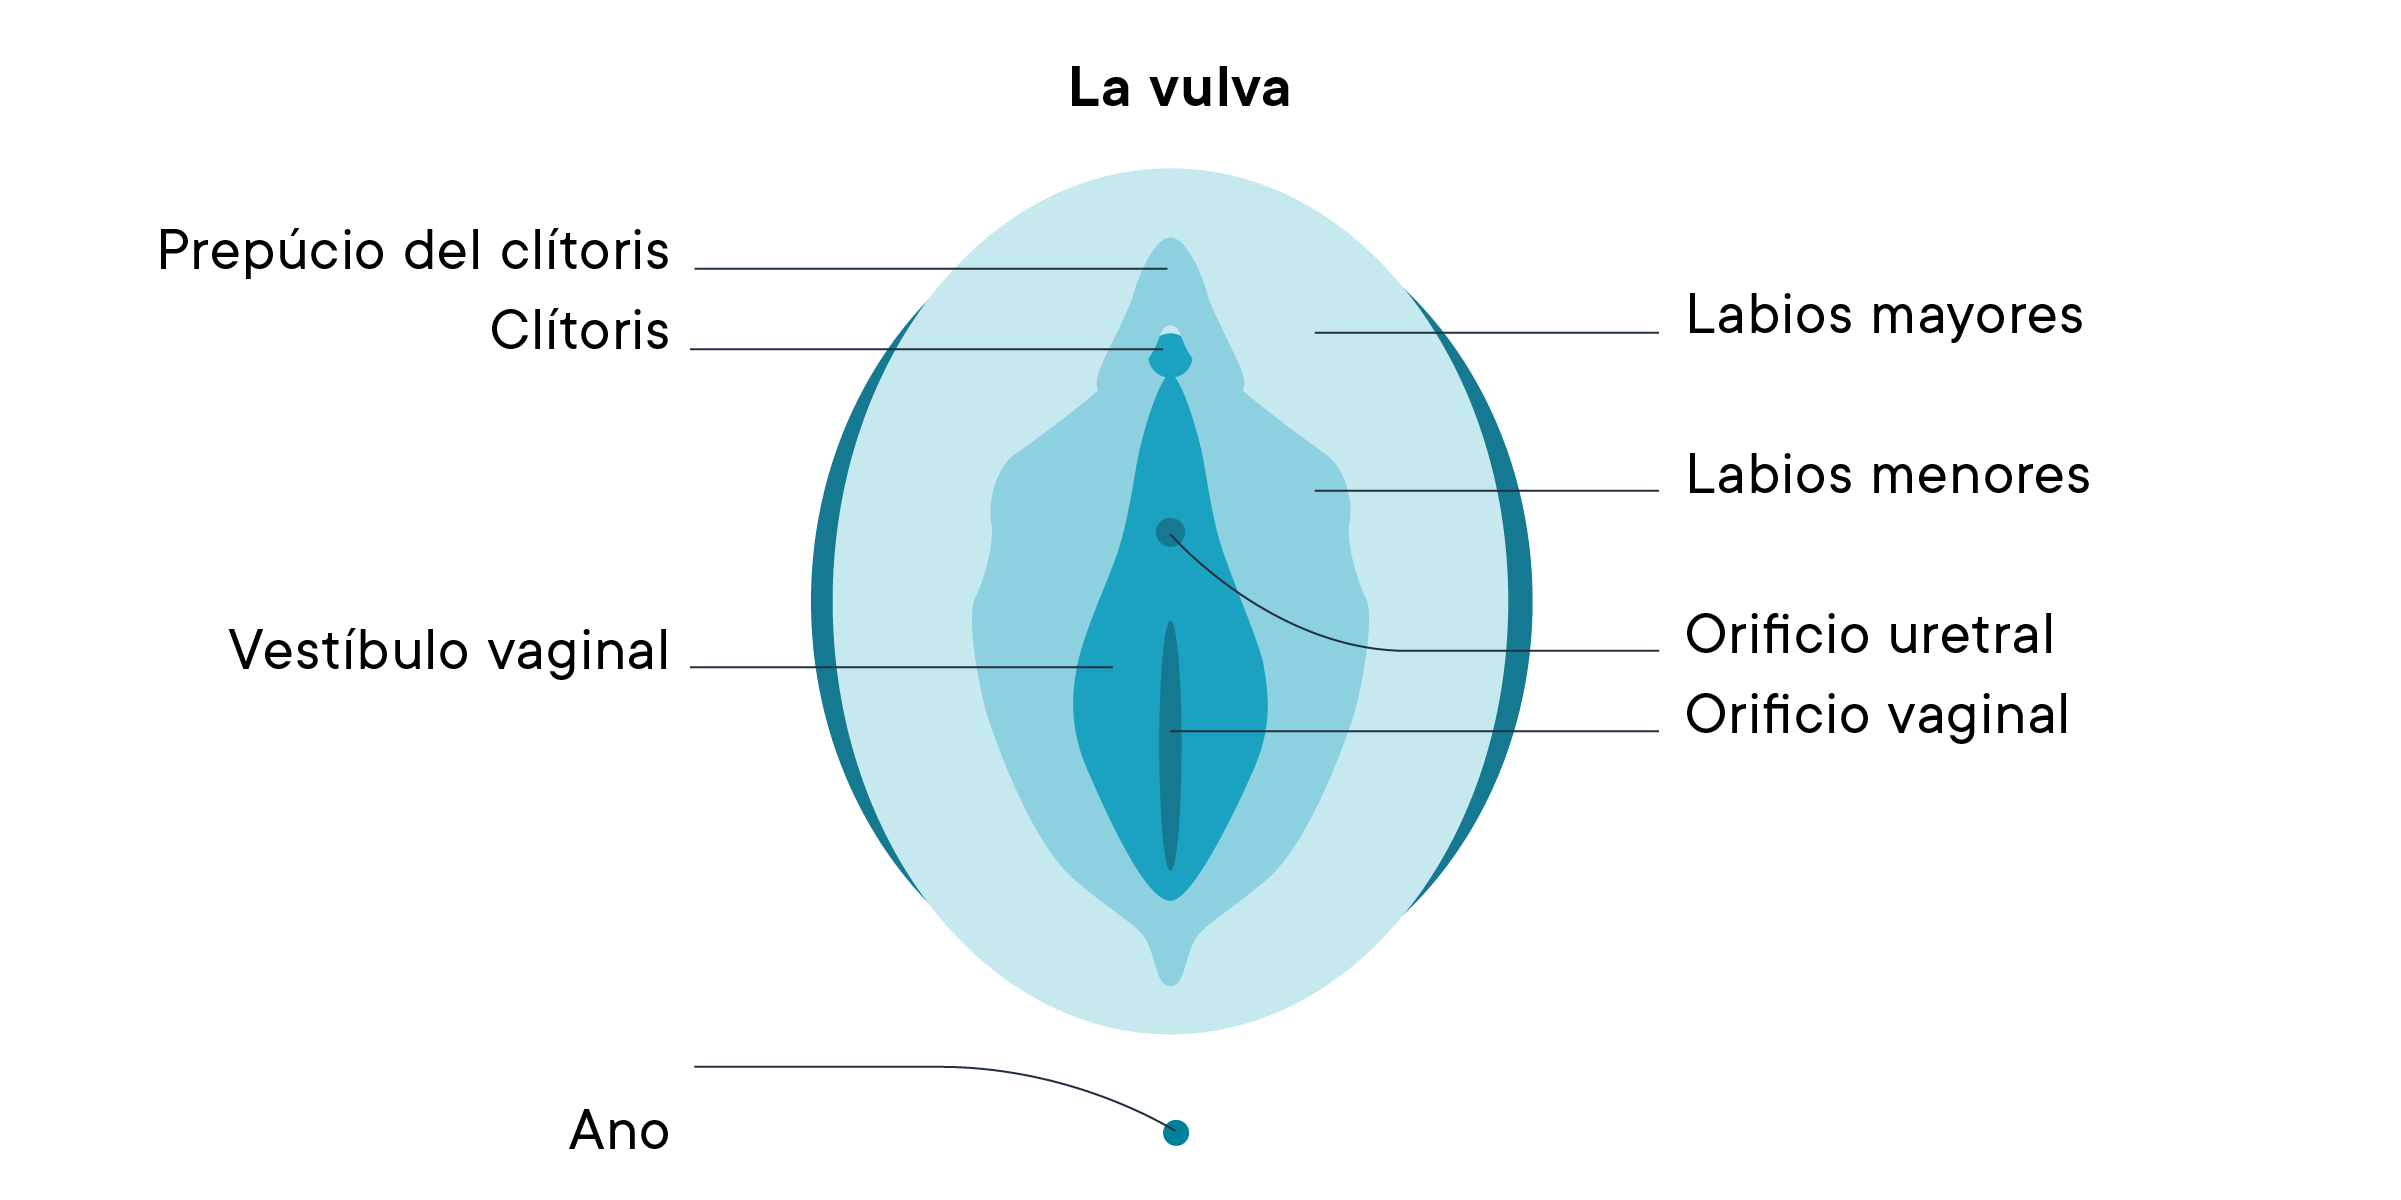 Diagrama de una vulva